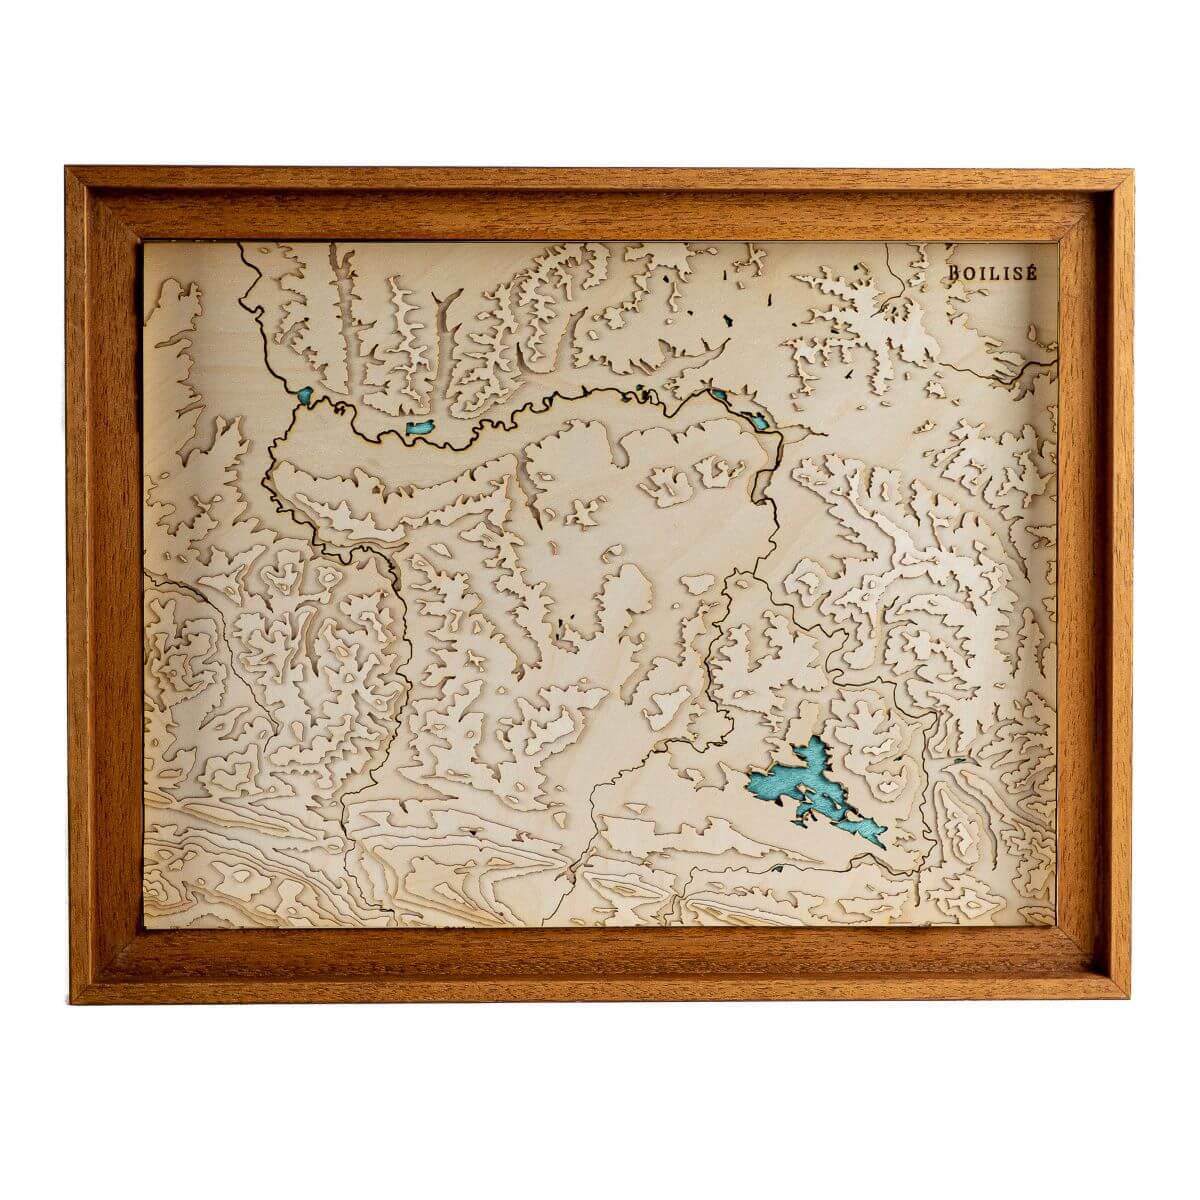 Le pays du Mirepoix représentée dans une carte au style unique